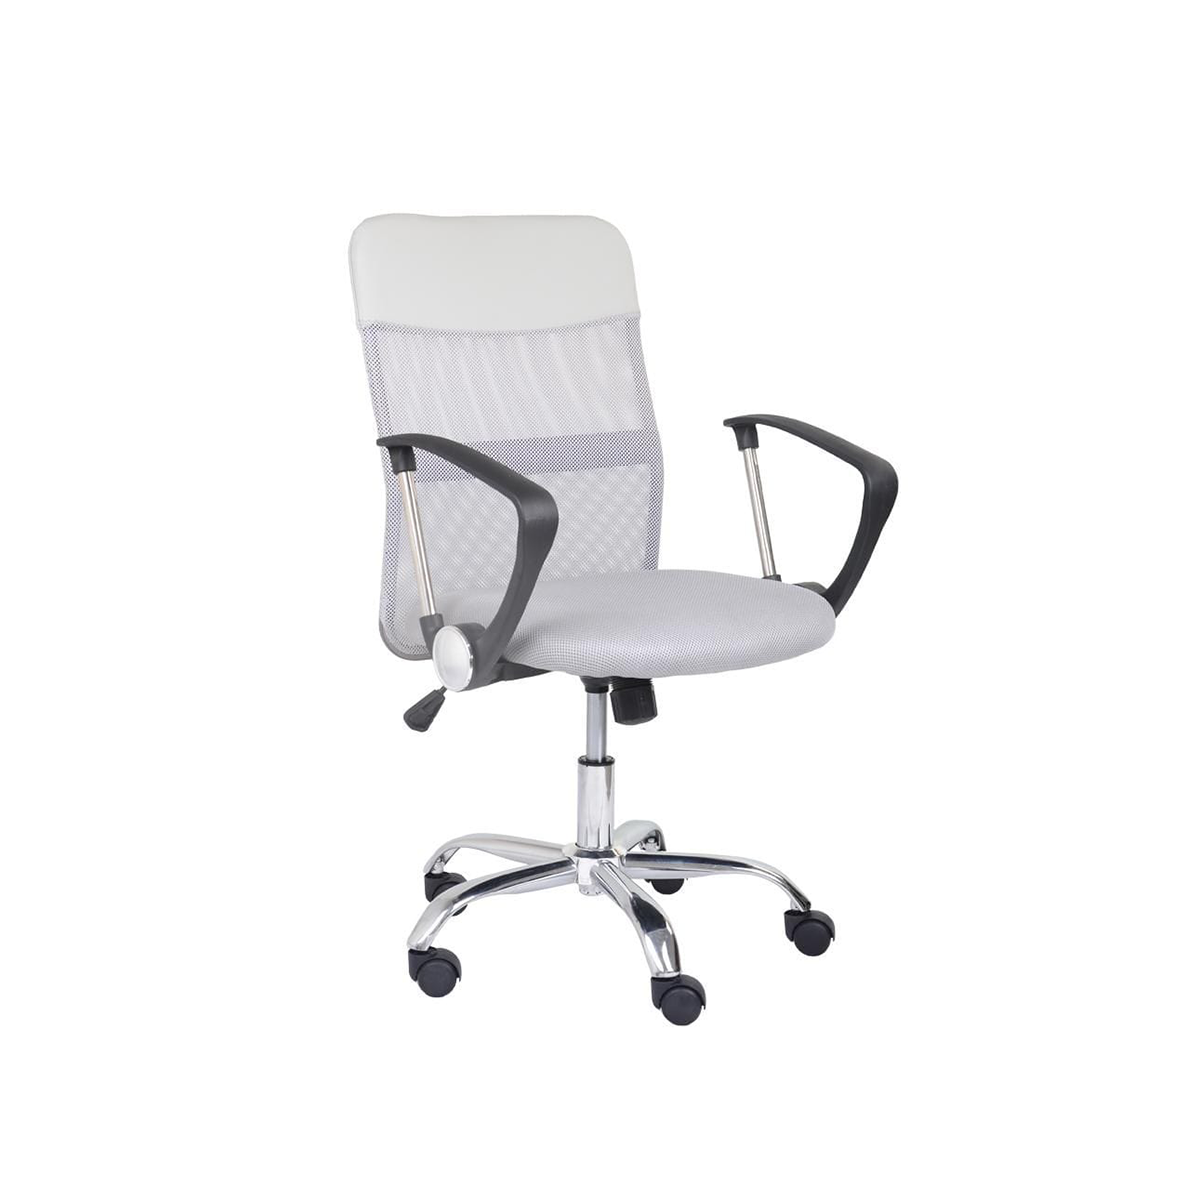 FondHouse Marion Office Chair Chromed legs White